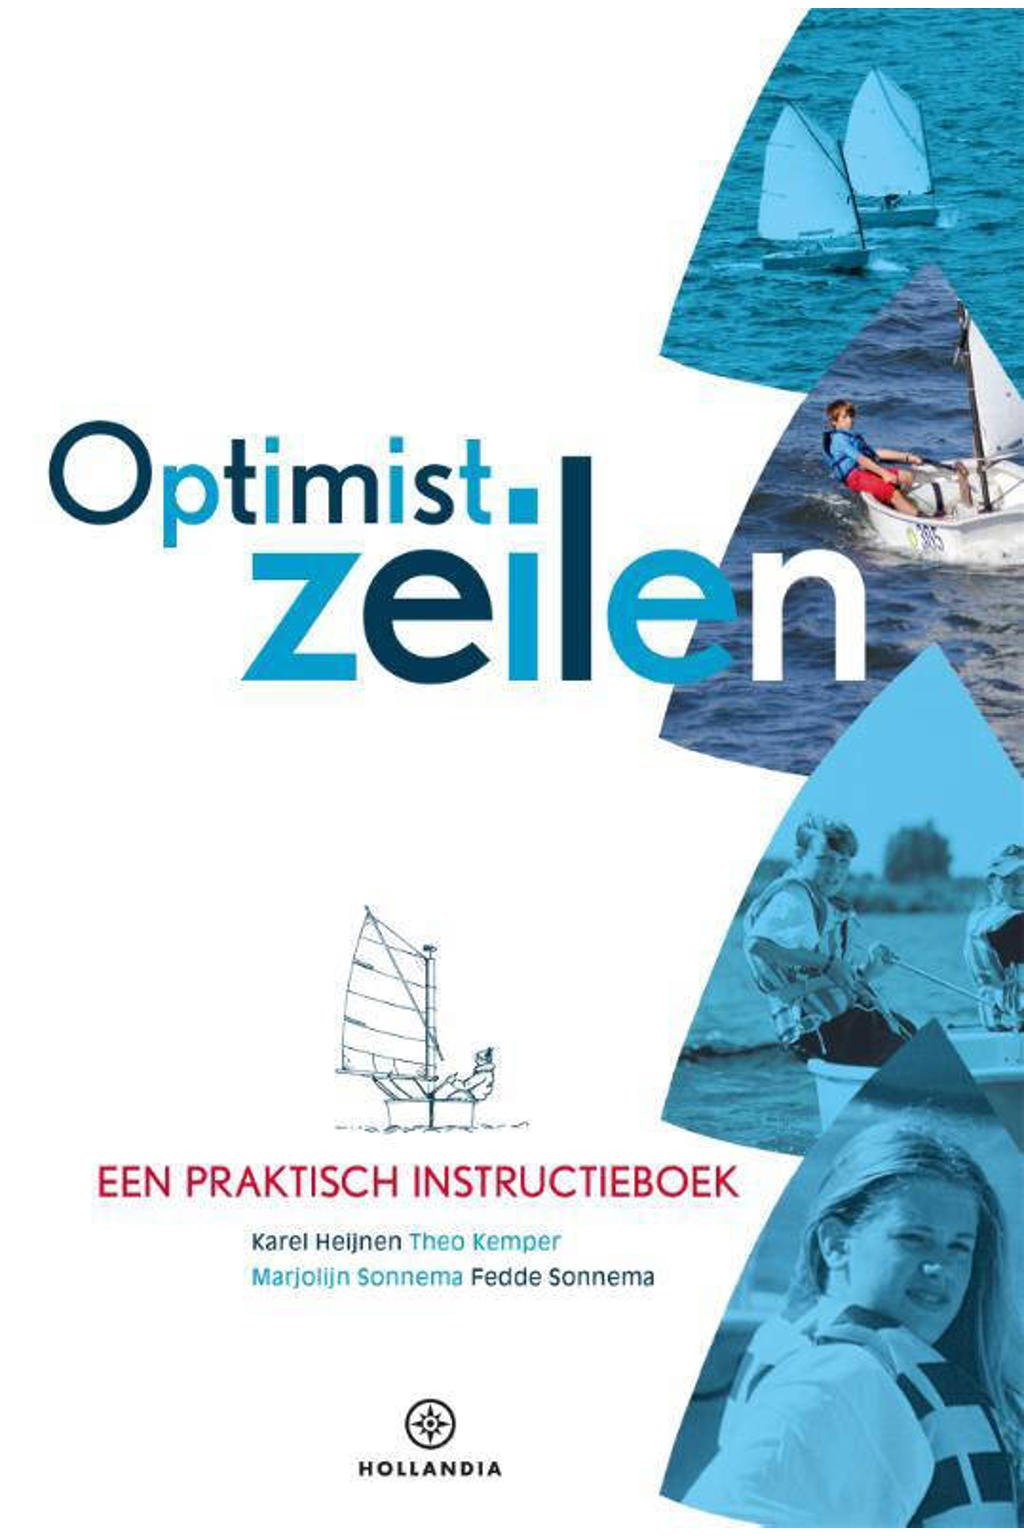 Optimist zeilen - Karel Heijnen, Theo Kemper, Marjolijn Sonnema, e.a.